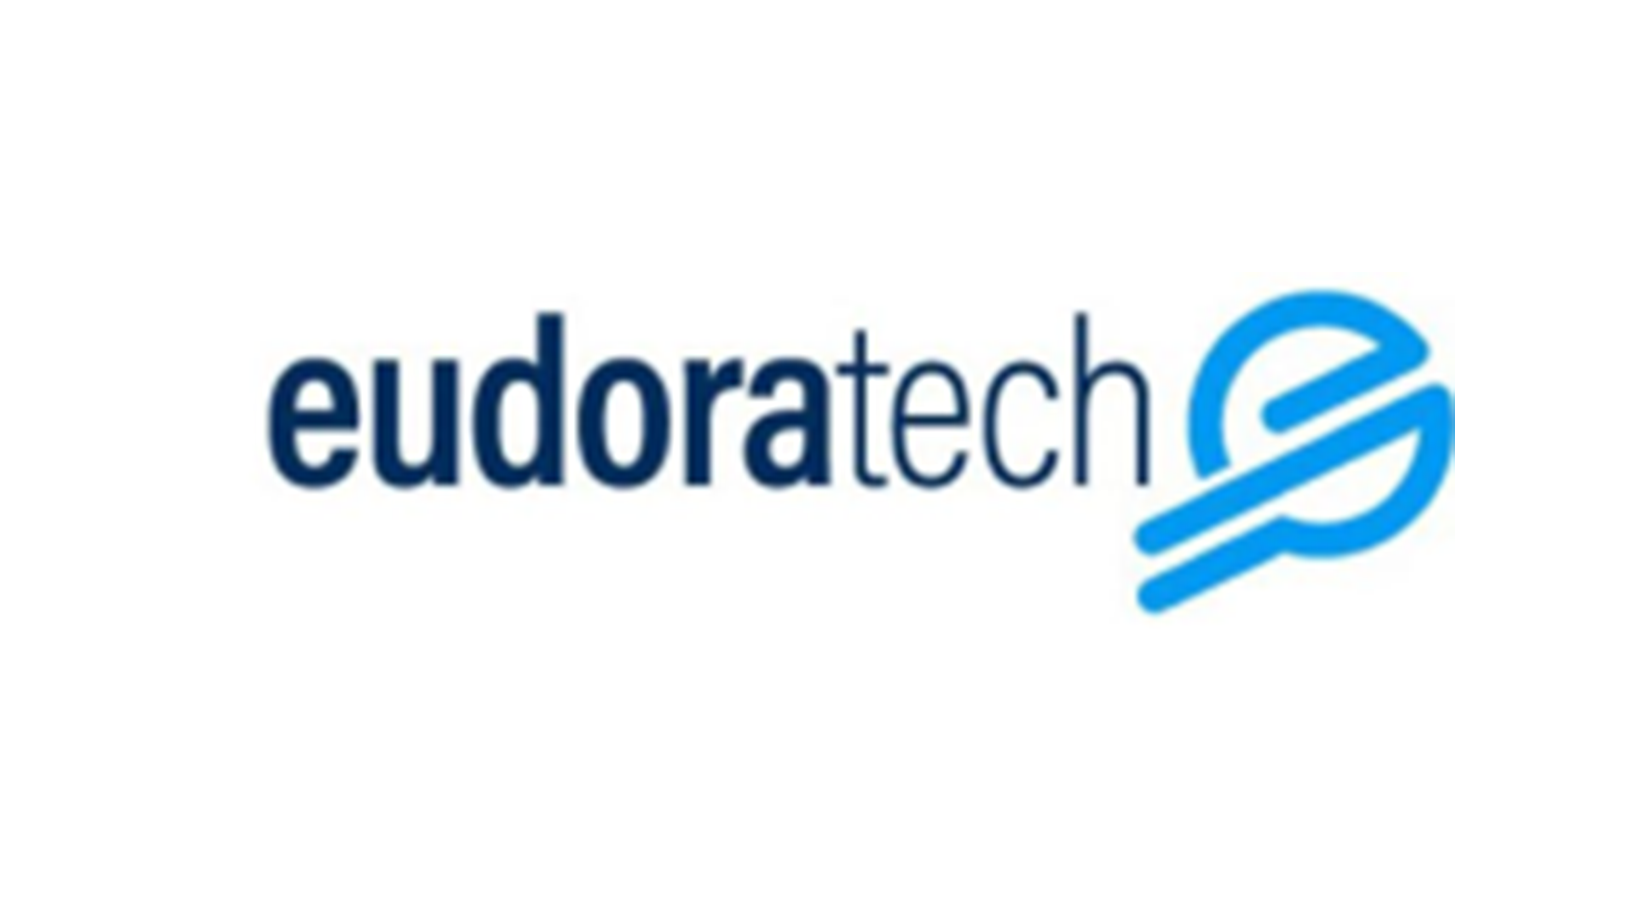 eudoratech logo